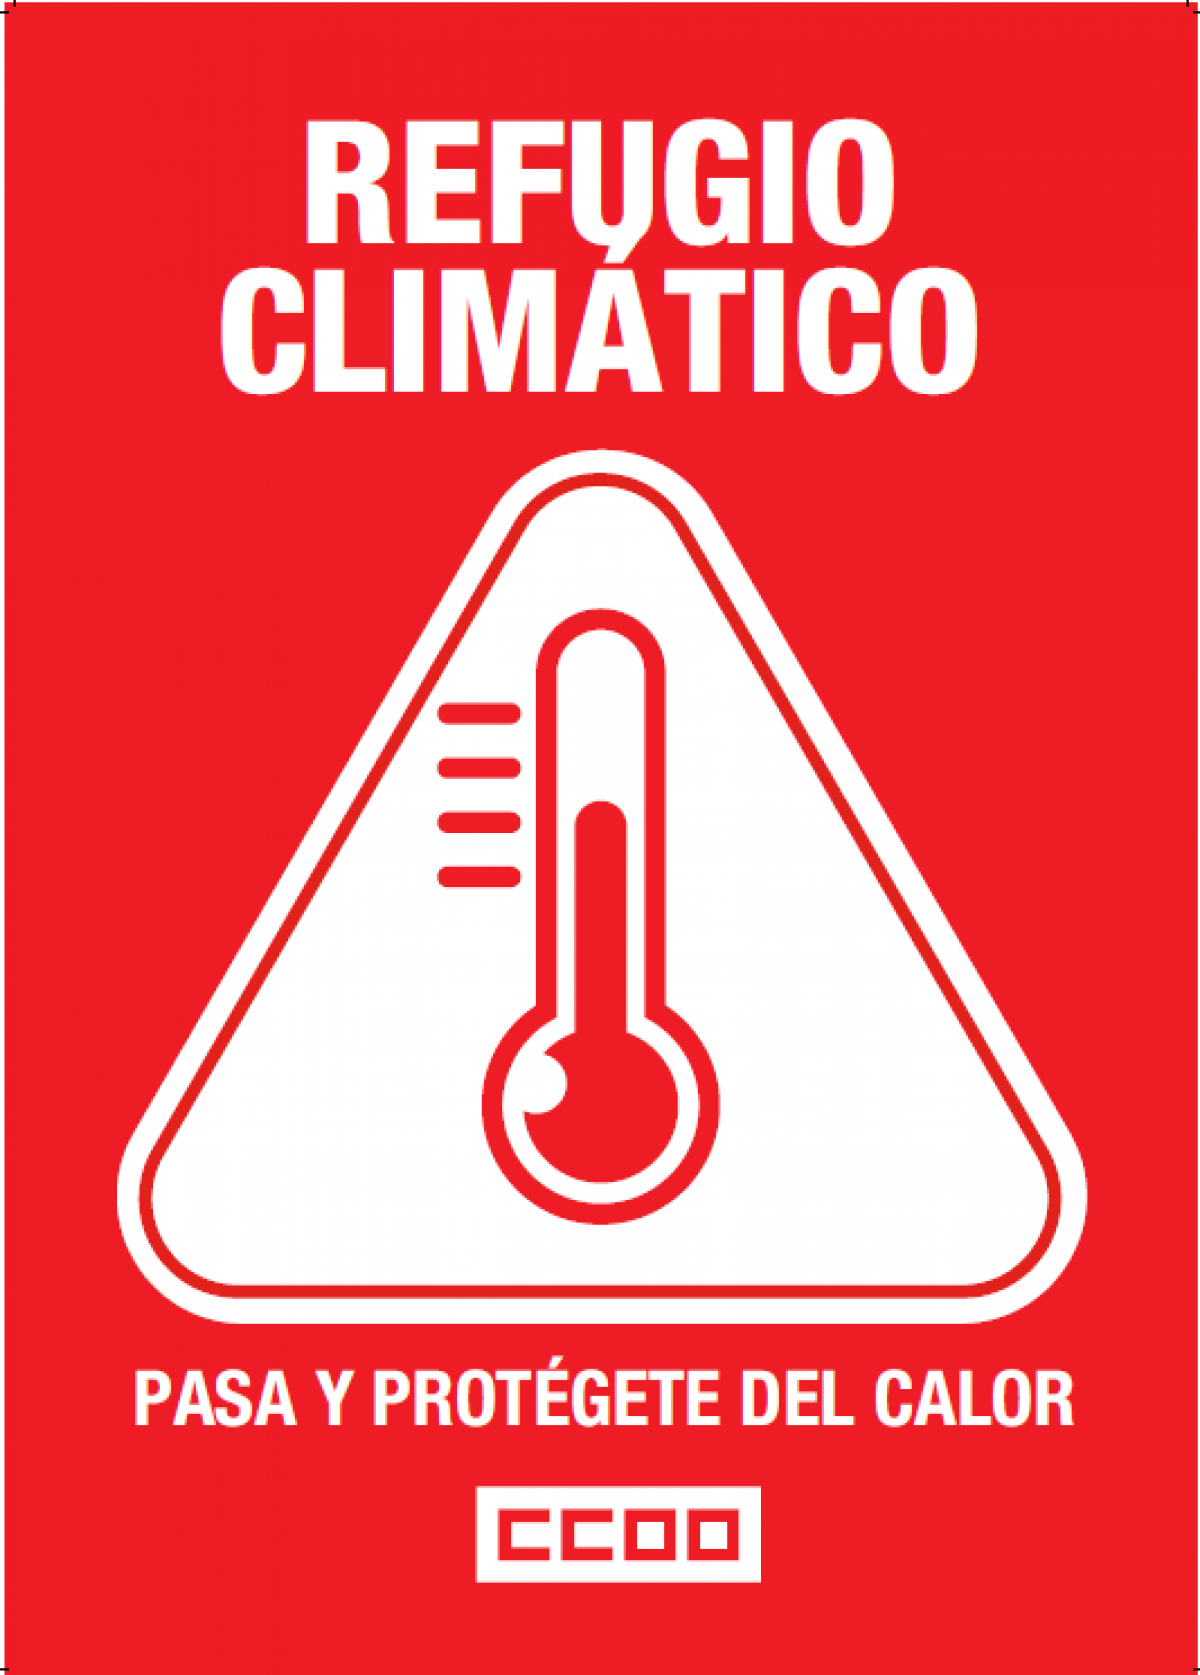 Refugio Climatico en CCOO